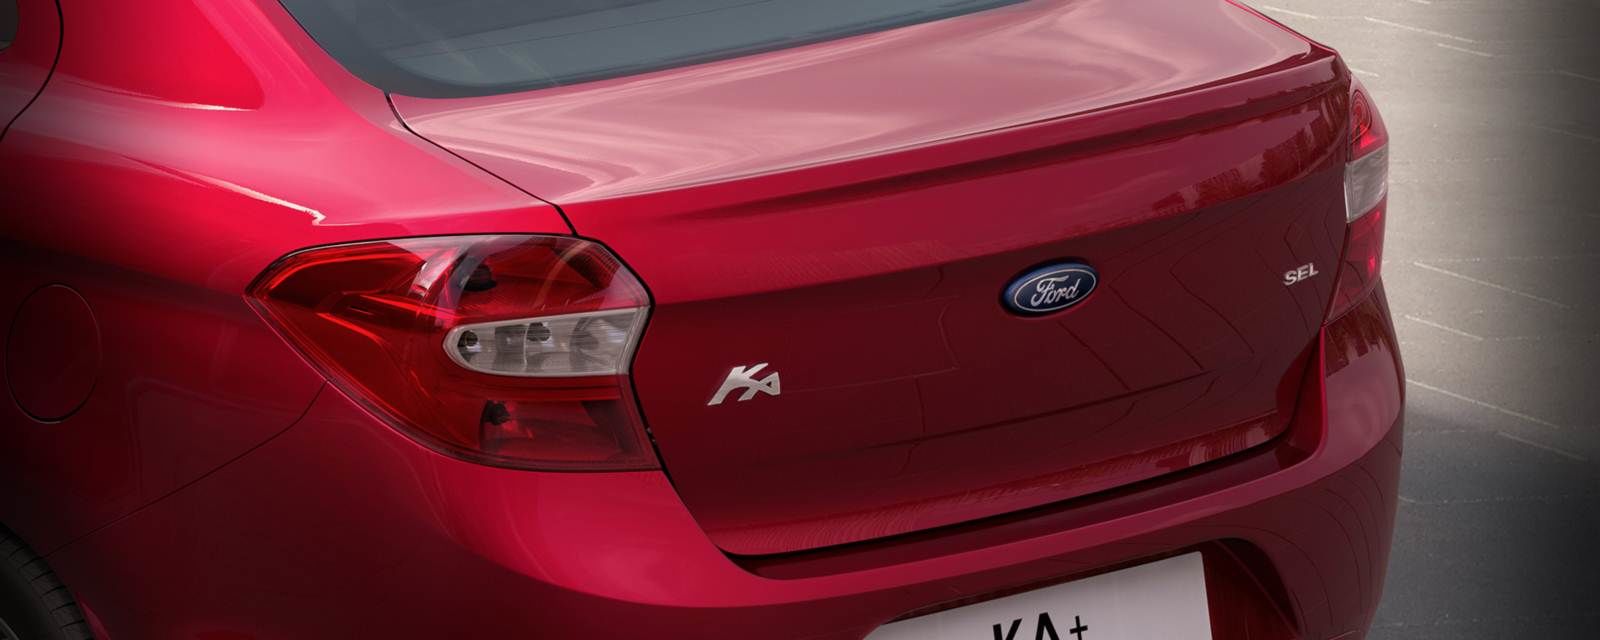 Detalhe da traseira do Novo Ford Ka+